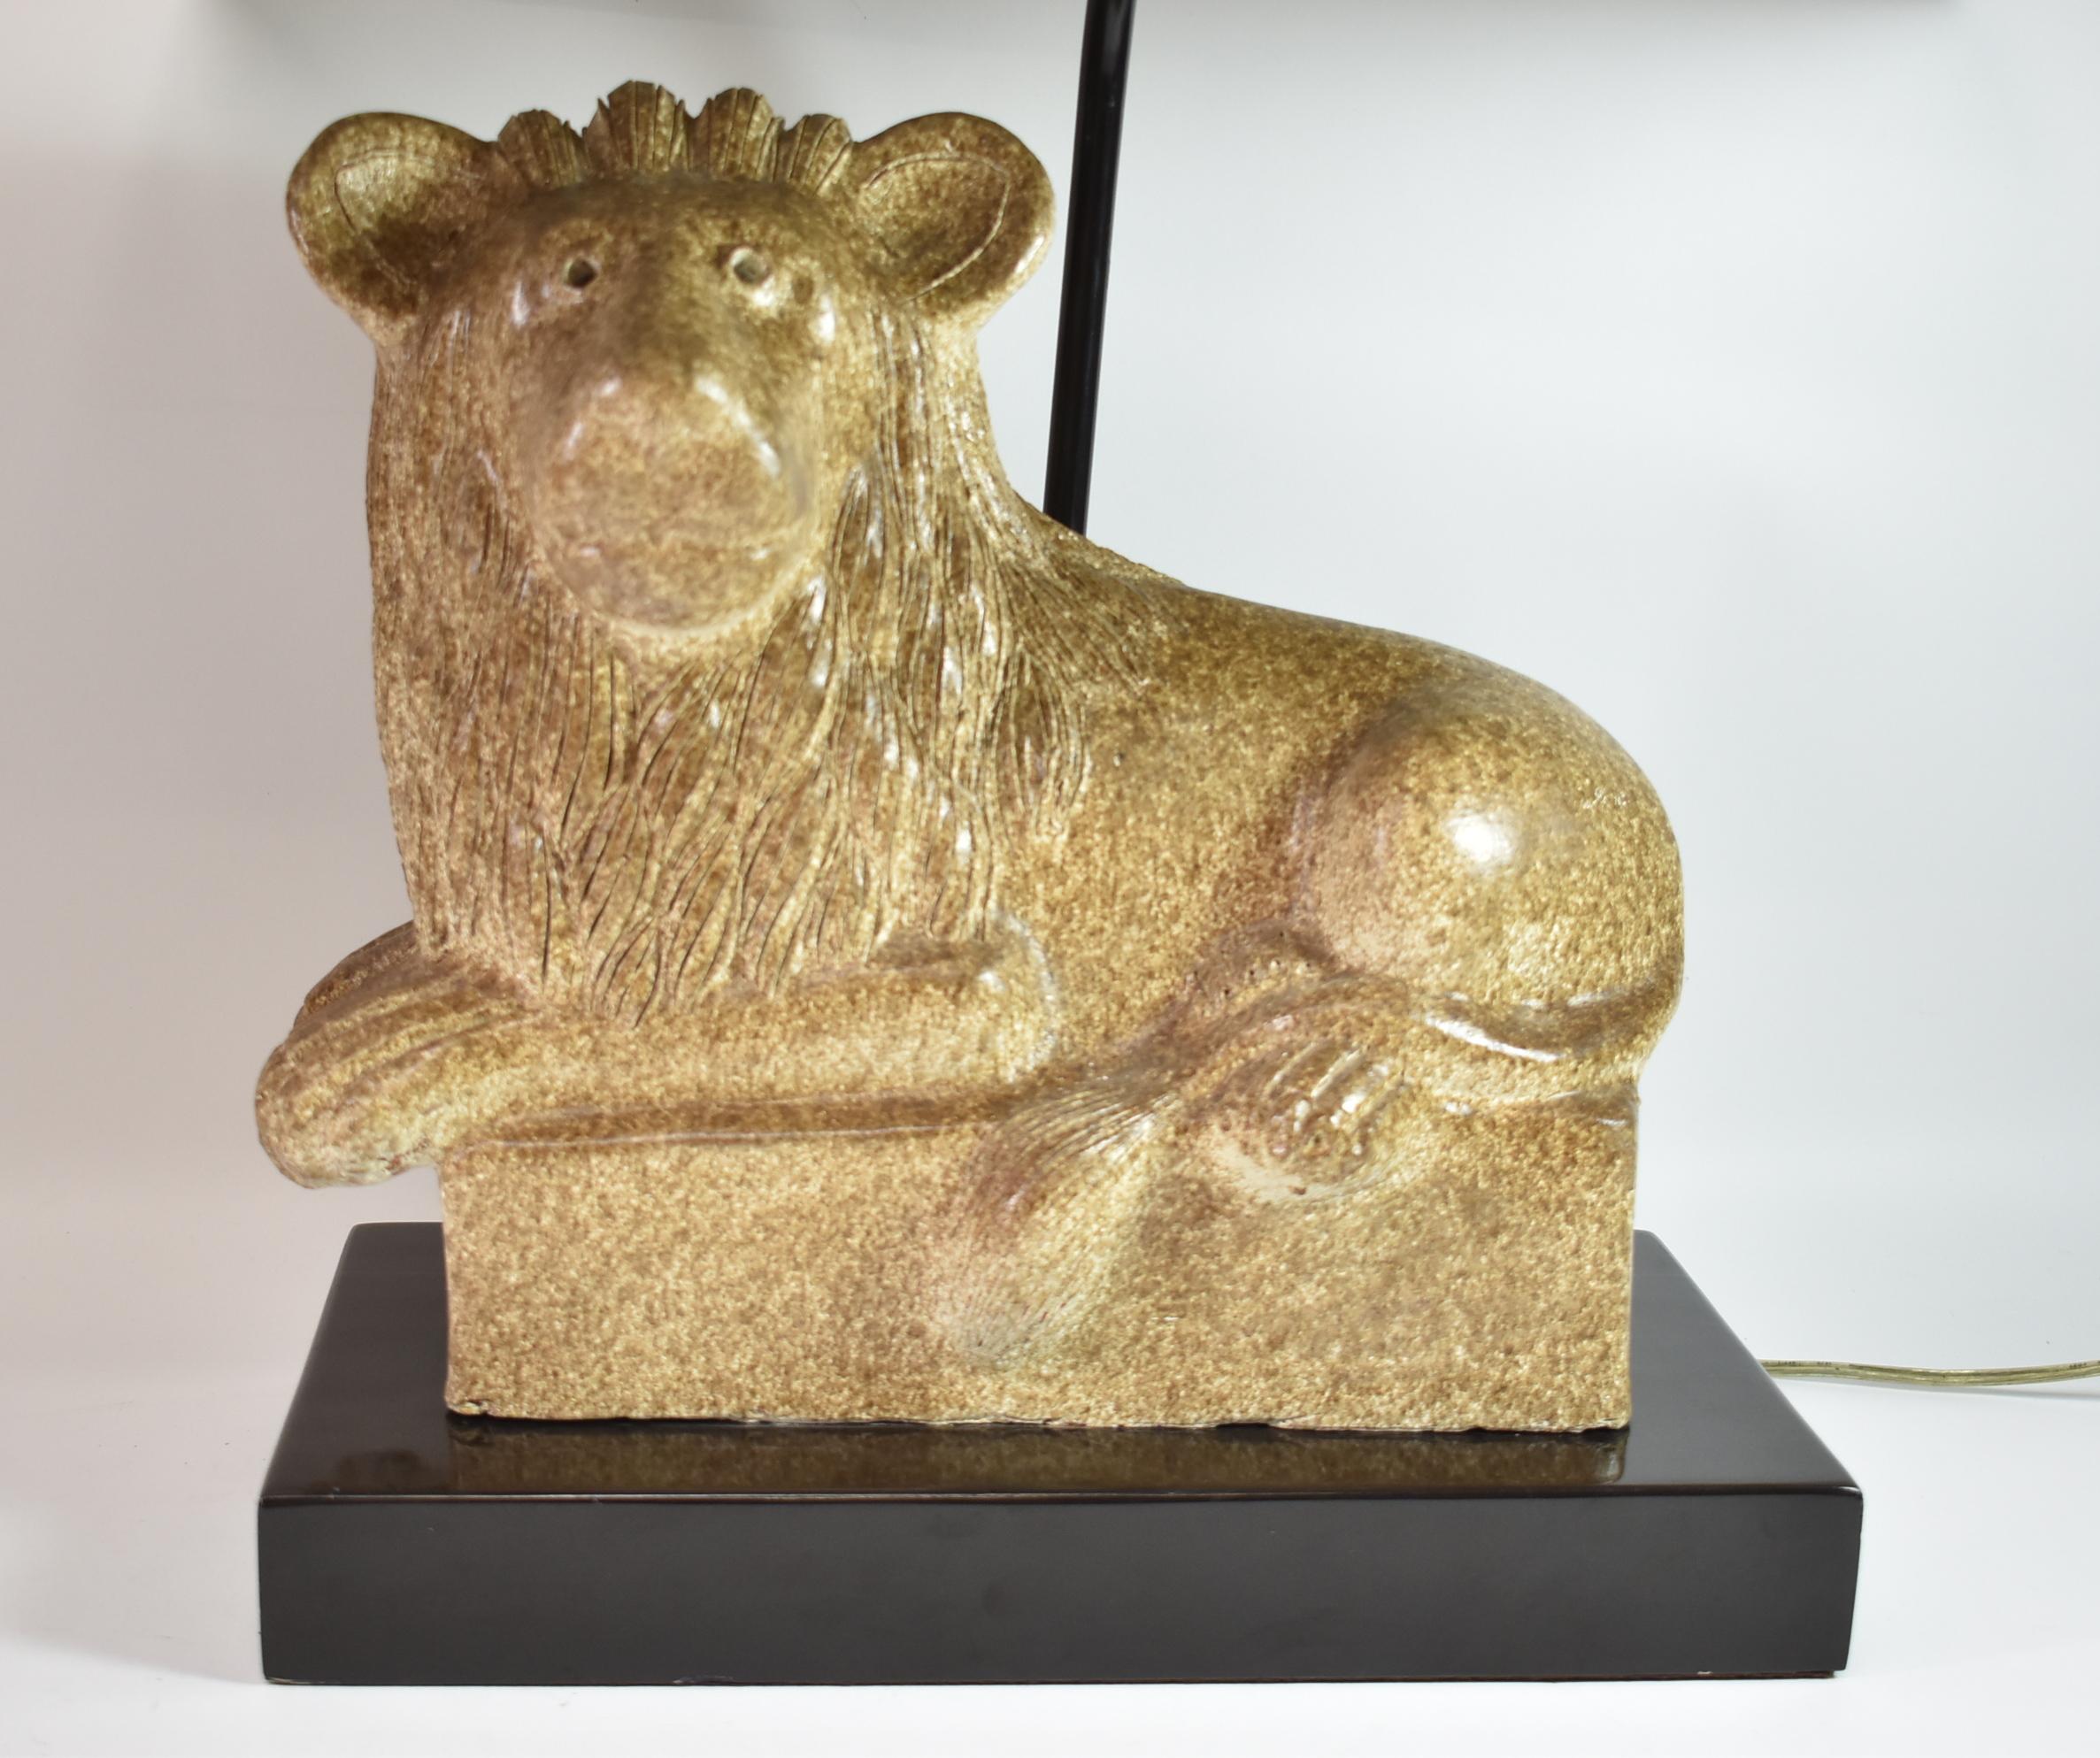 Table lion en céramique dans des nuances variées de brun et de crème sur une base en laque noire. Abat-jour en corde d'origine. Mesures : 66,04 cm de haut x 20,32 cm de large à la base x 38,1 cm.